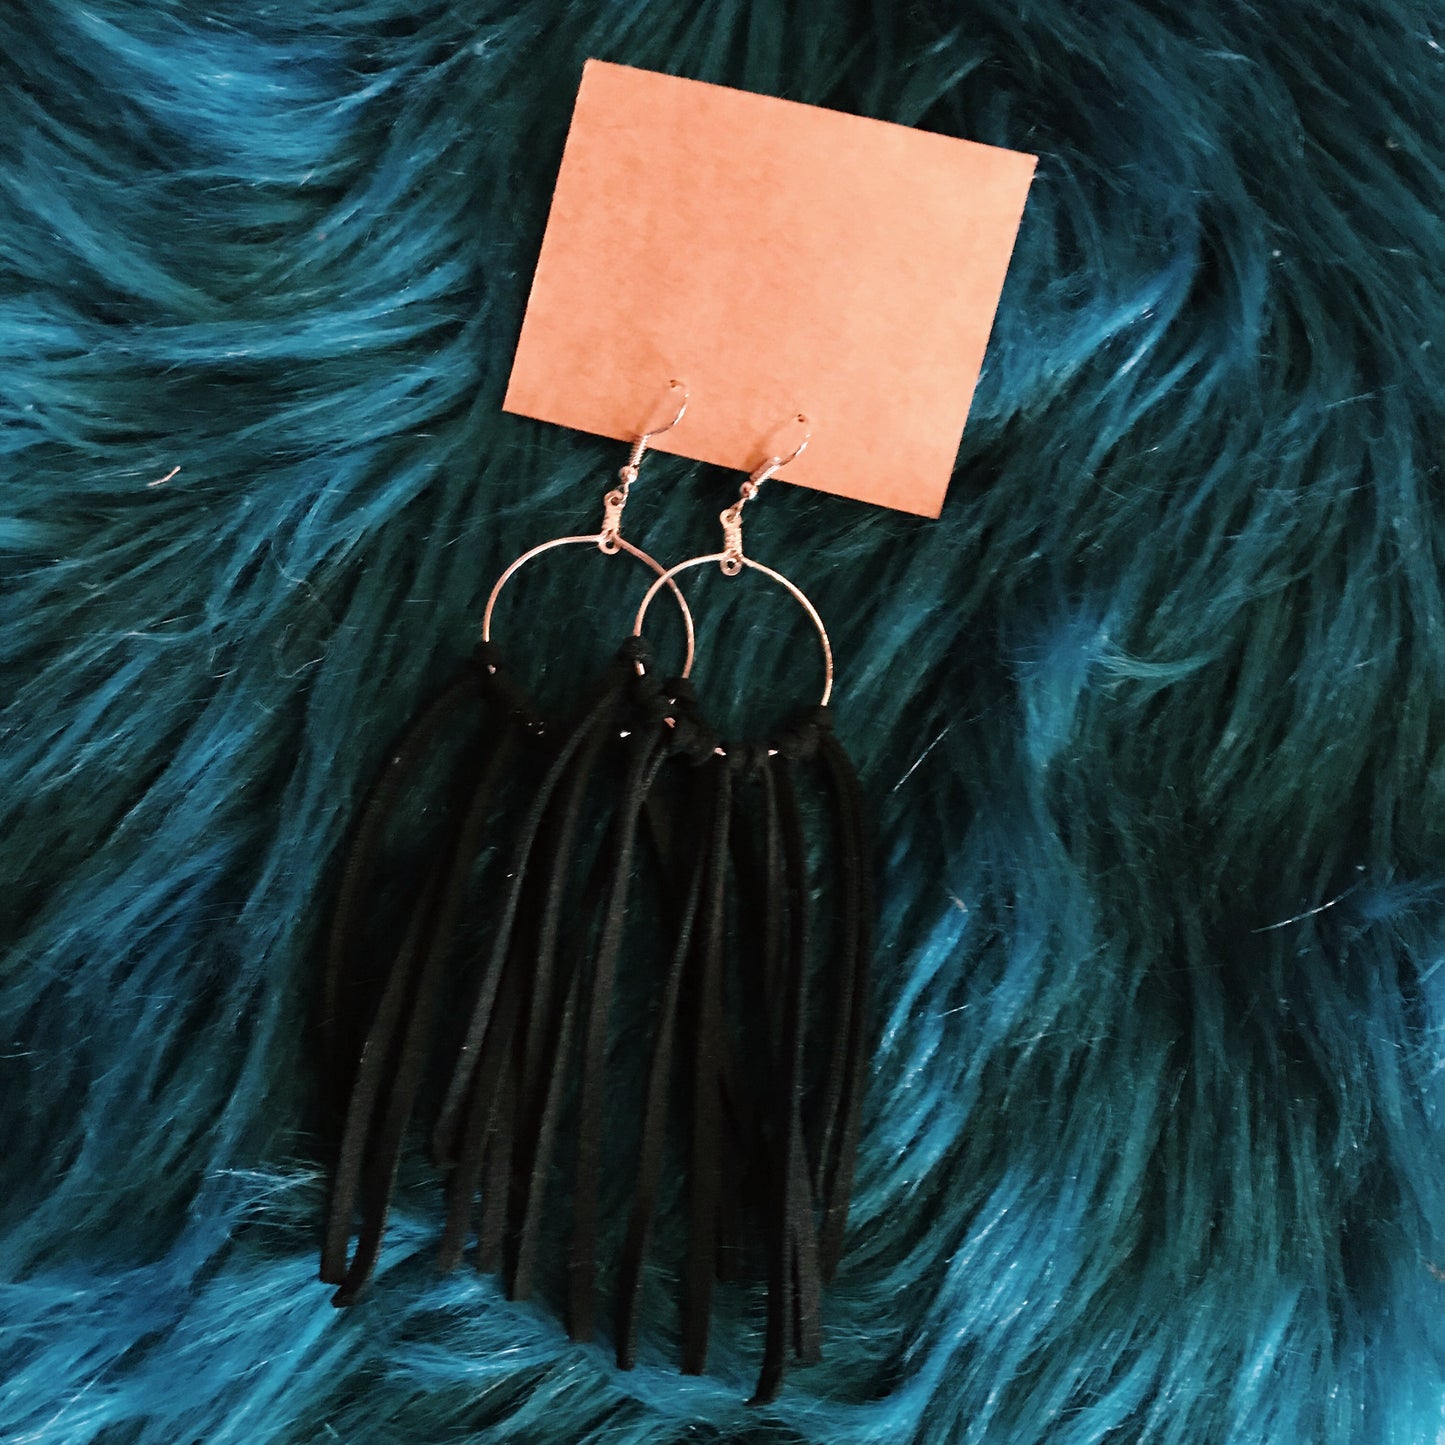 Leather cord tassel earrings